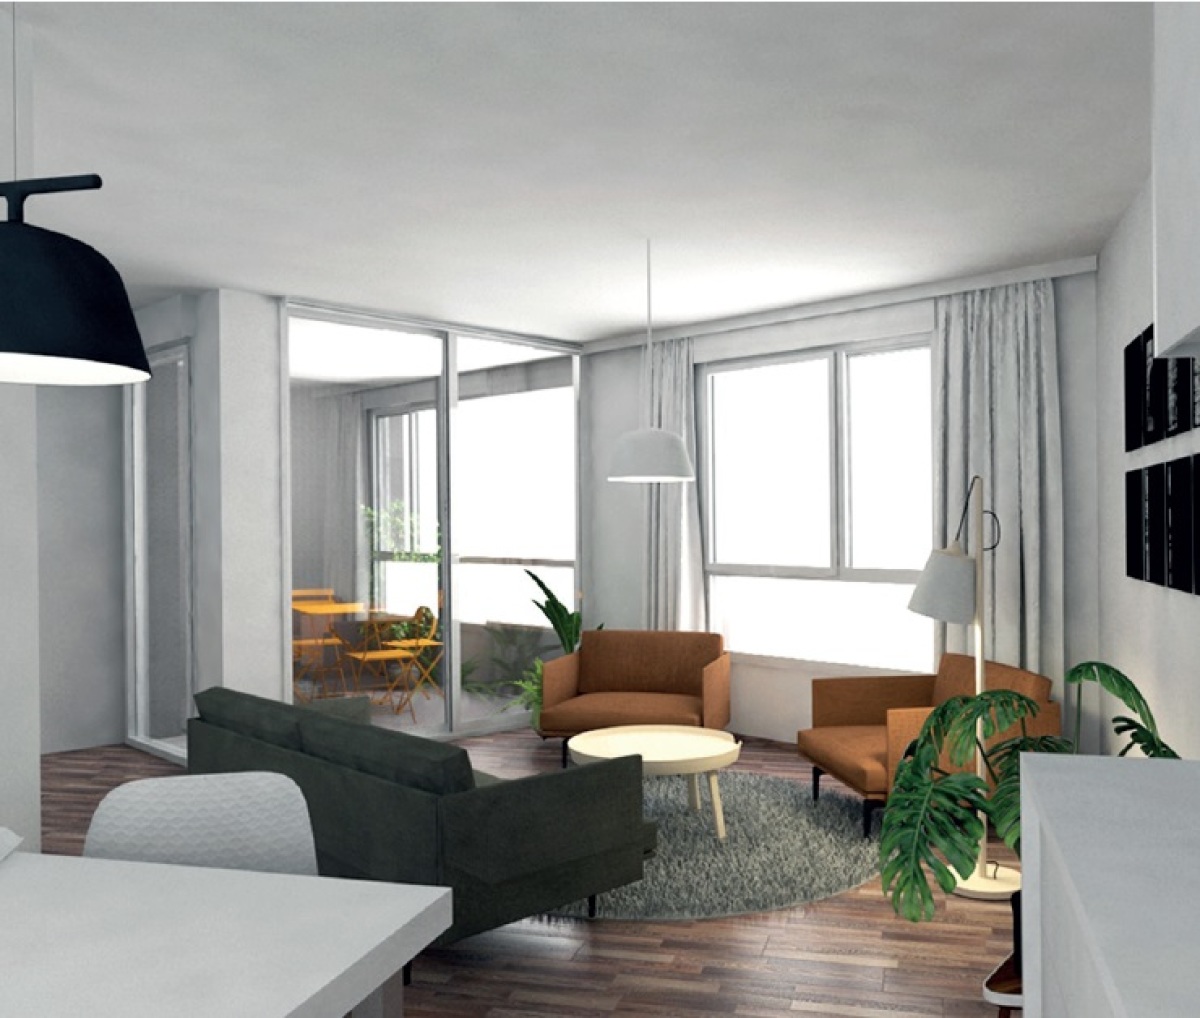 Programme neuf Nuances : Maisons neuves et appartements neufs à Baud-Chardonnet référence 5252, aperçu n°2